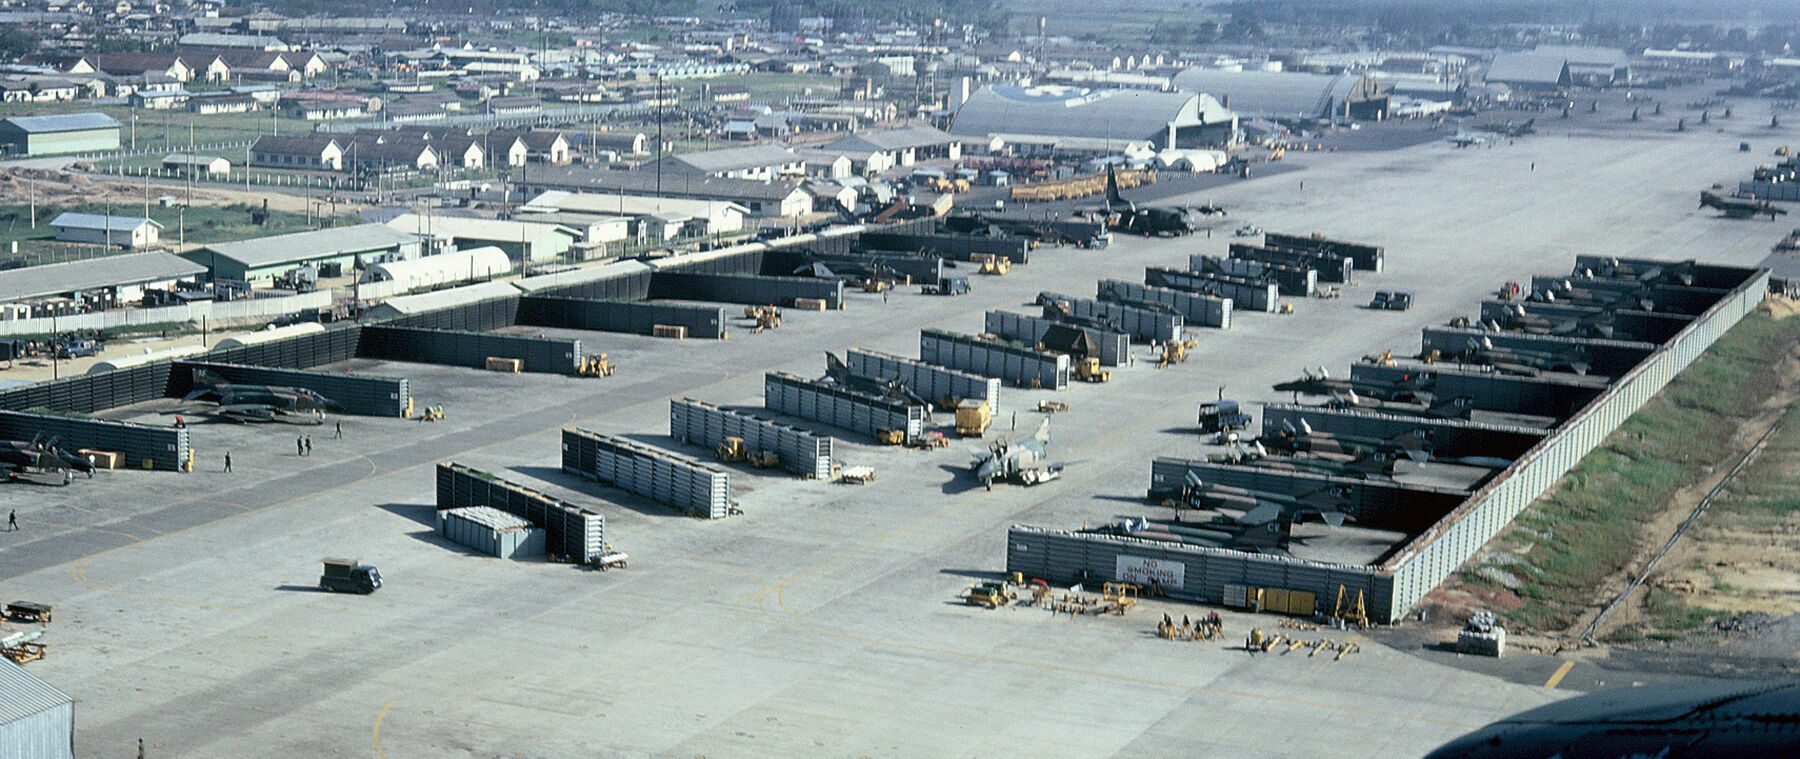 Защитные капониры для авиационной техники на американской авиабазе Дананг, около 1968 года (с) ВВС США